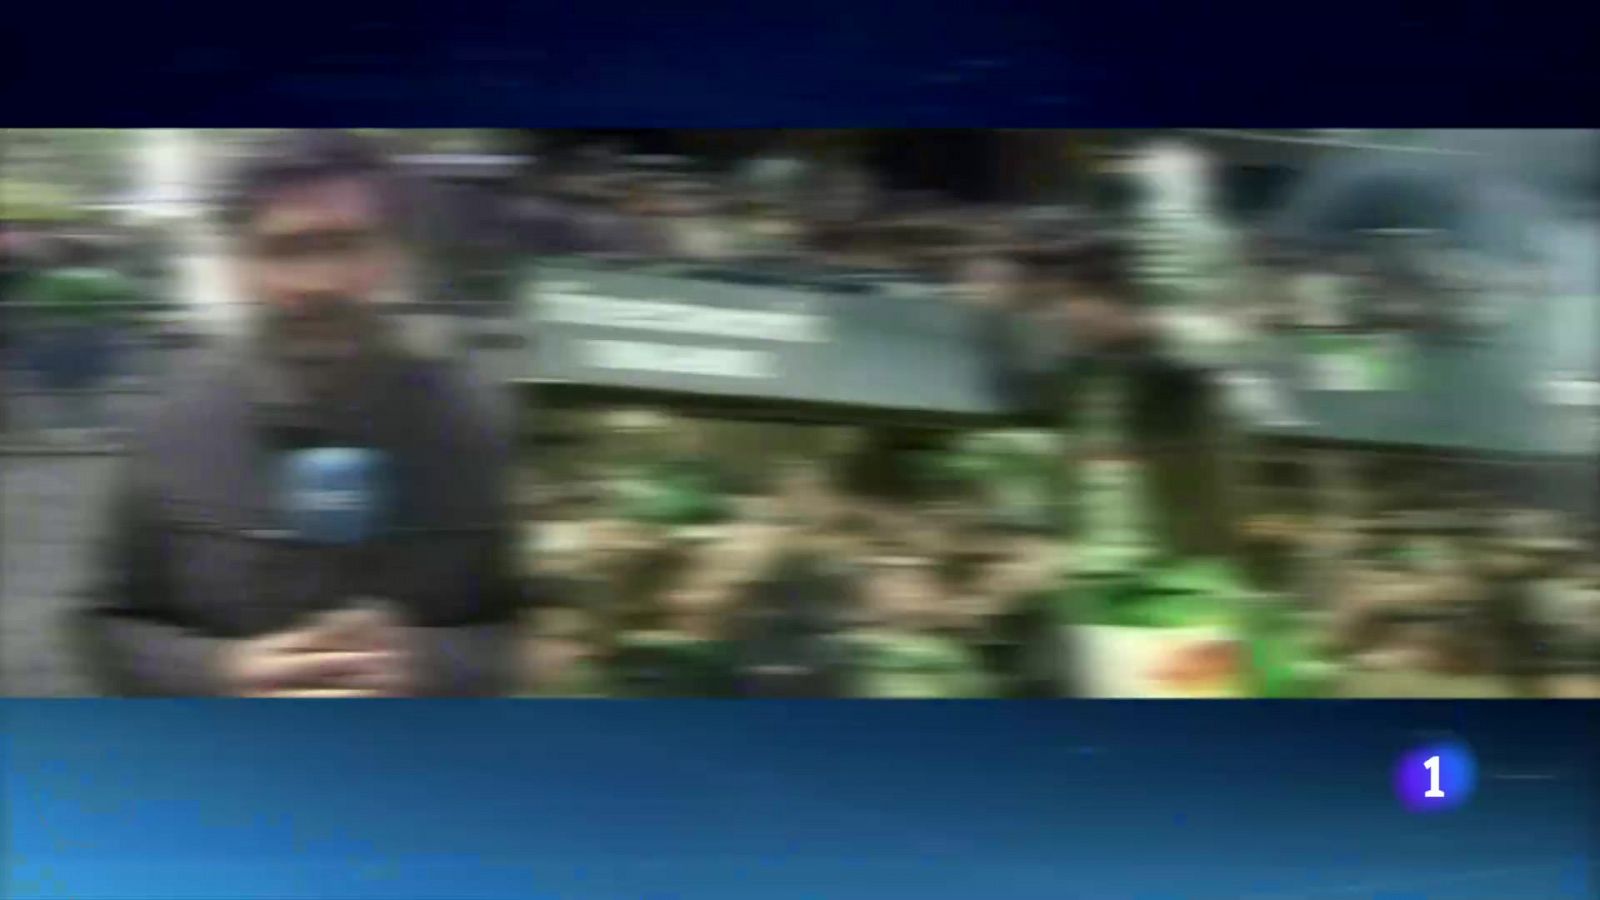 El Betis levanta su tercera Copa del Rey en los penaltis        